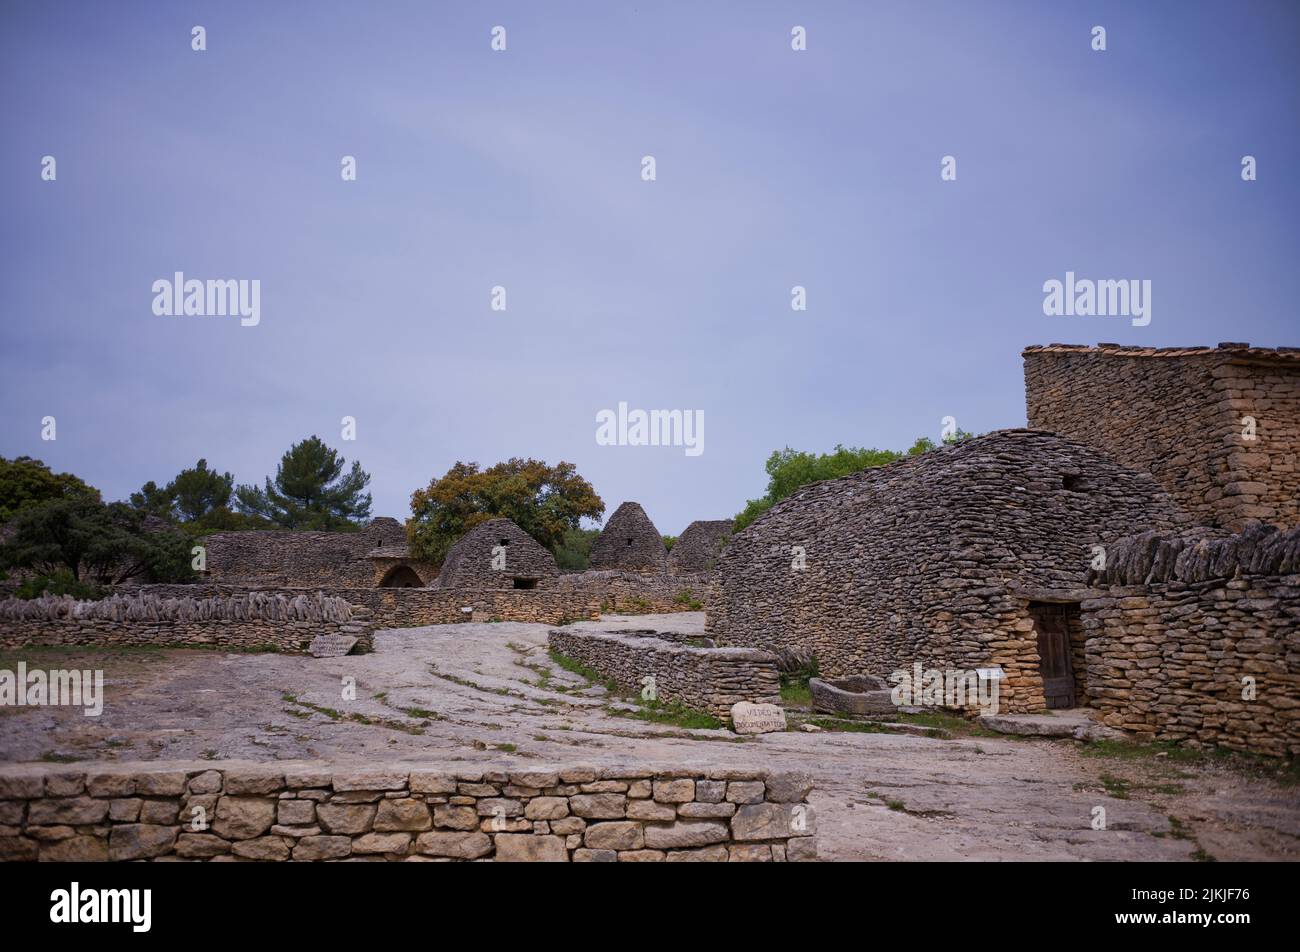 Dry stone roundhouses, Village des Bories, village of stone huts, open-air museum, Gordes, Vaucluse, Provence-Alpes-Côte d'Azur, France Stock Photo